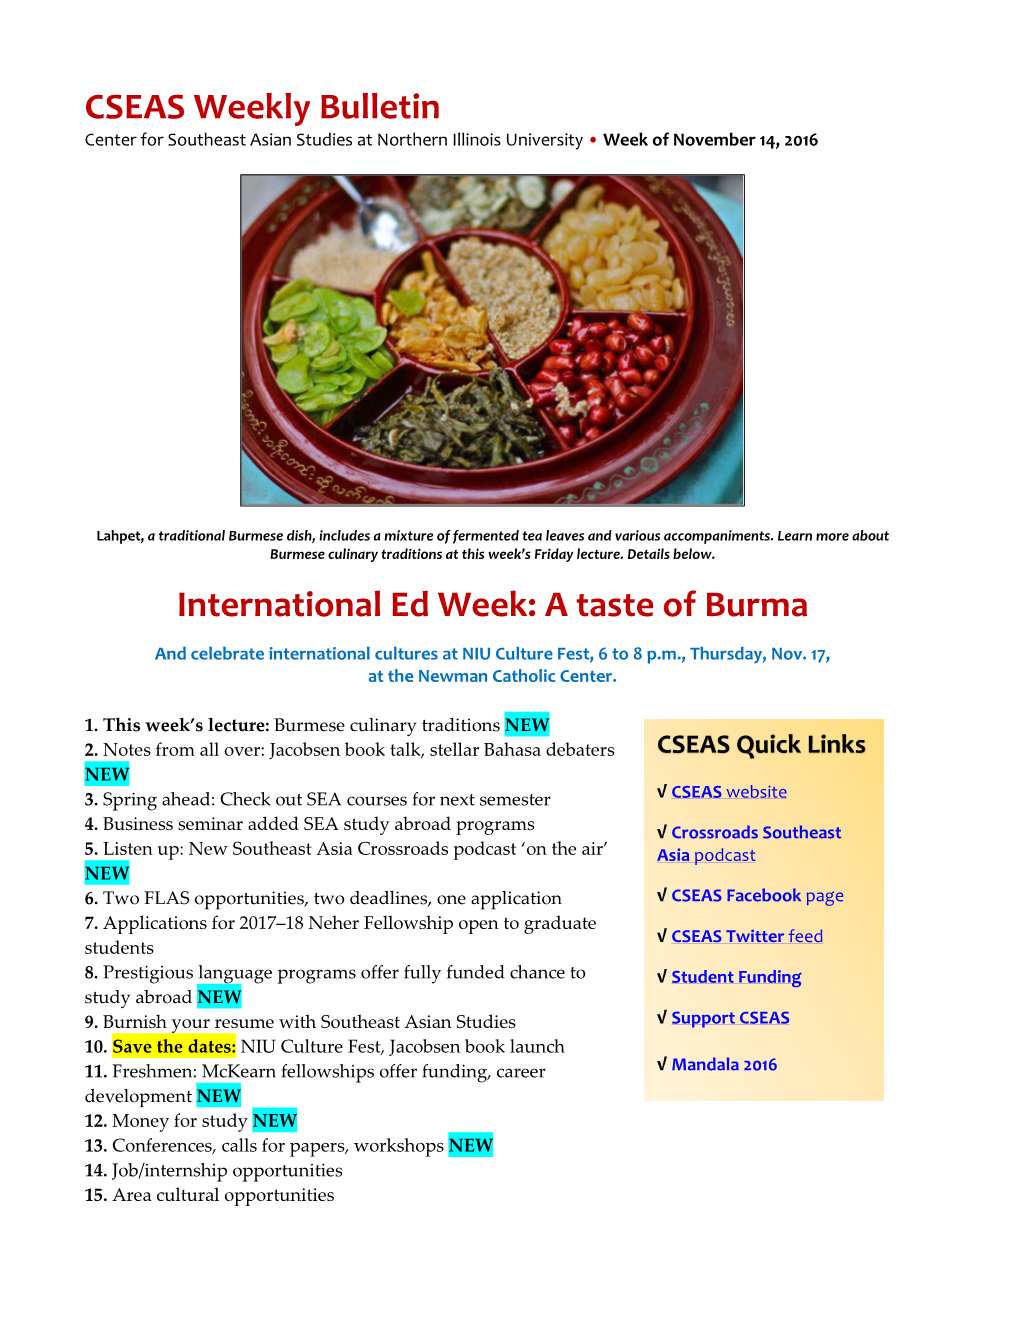 CSEAS Weekly Bulletin International Ed Week